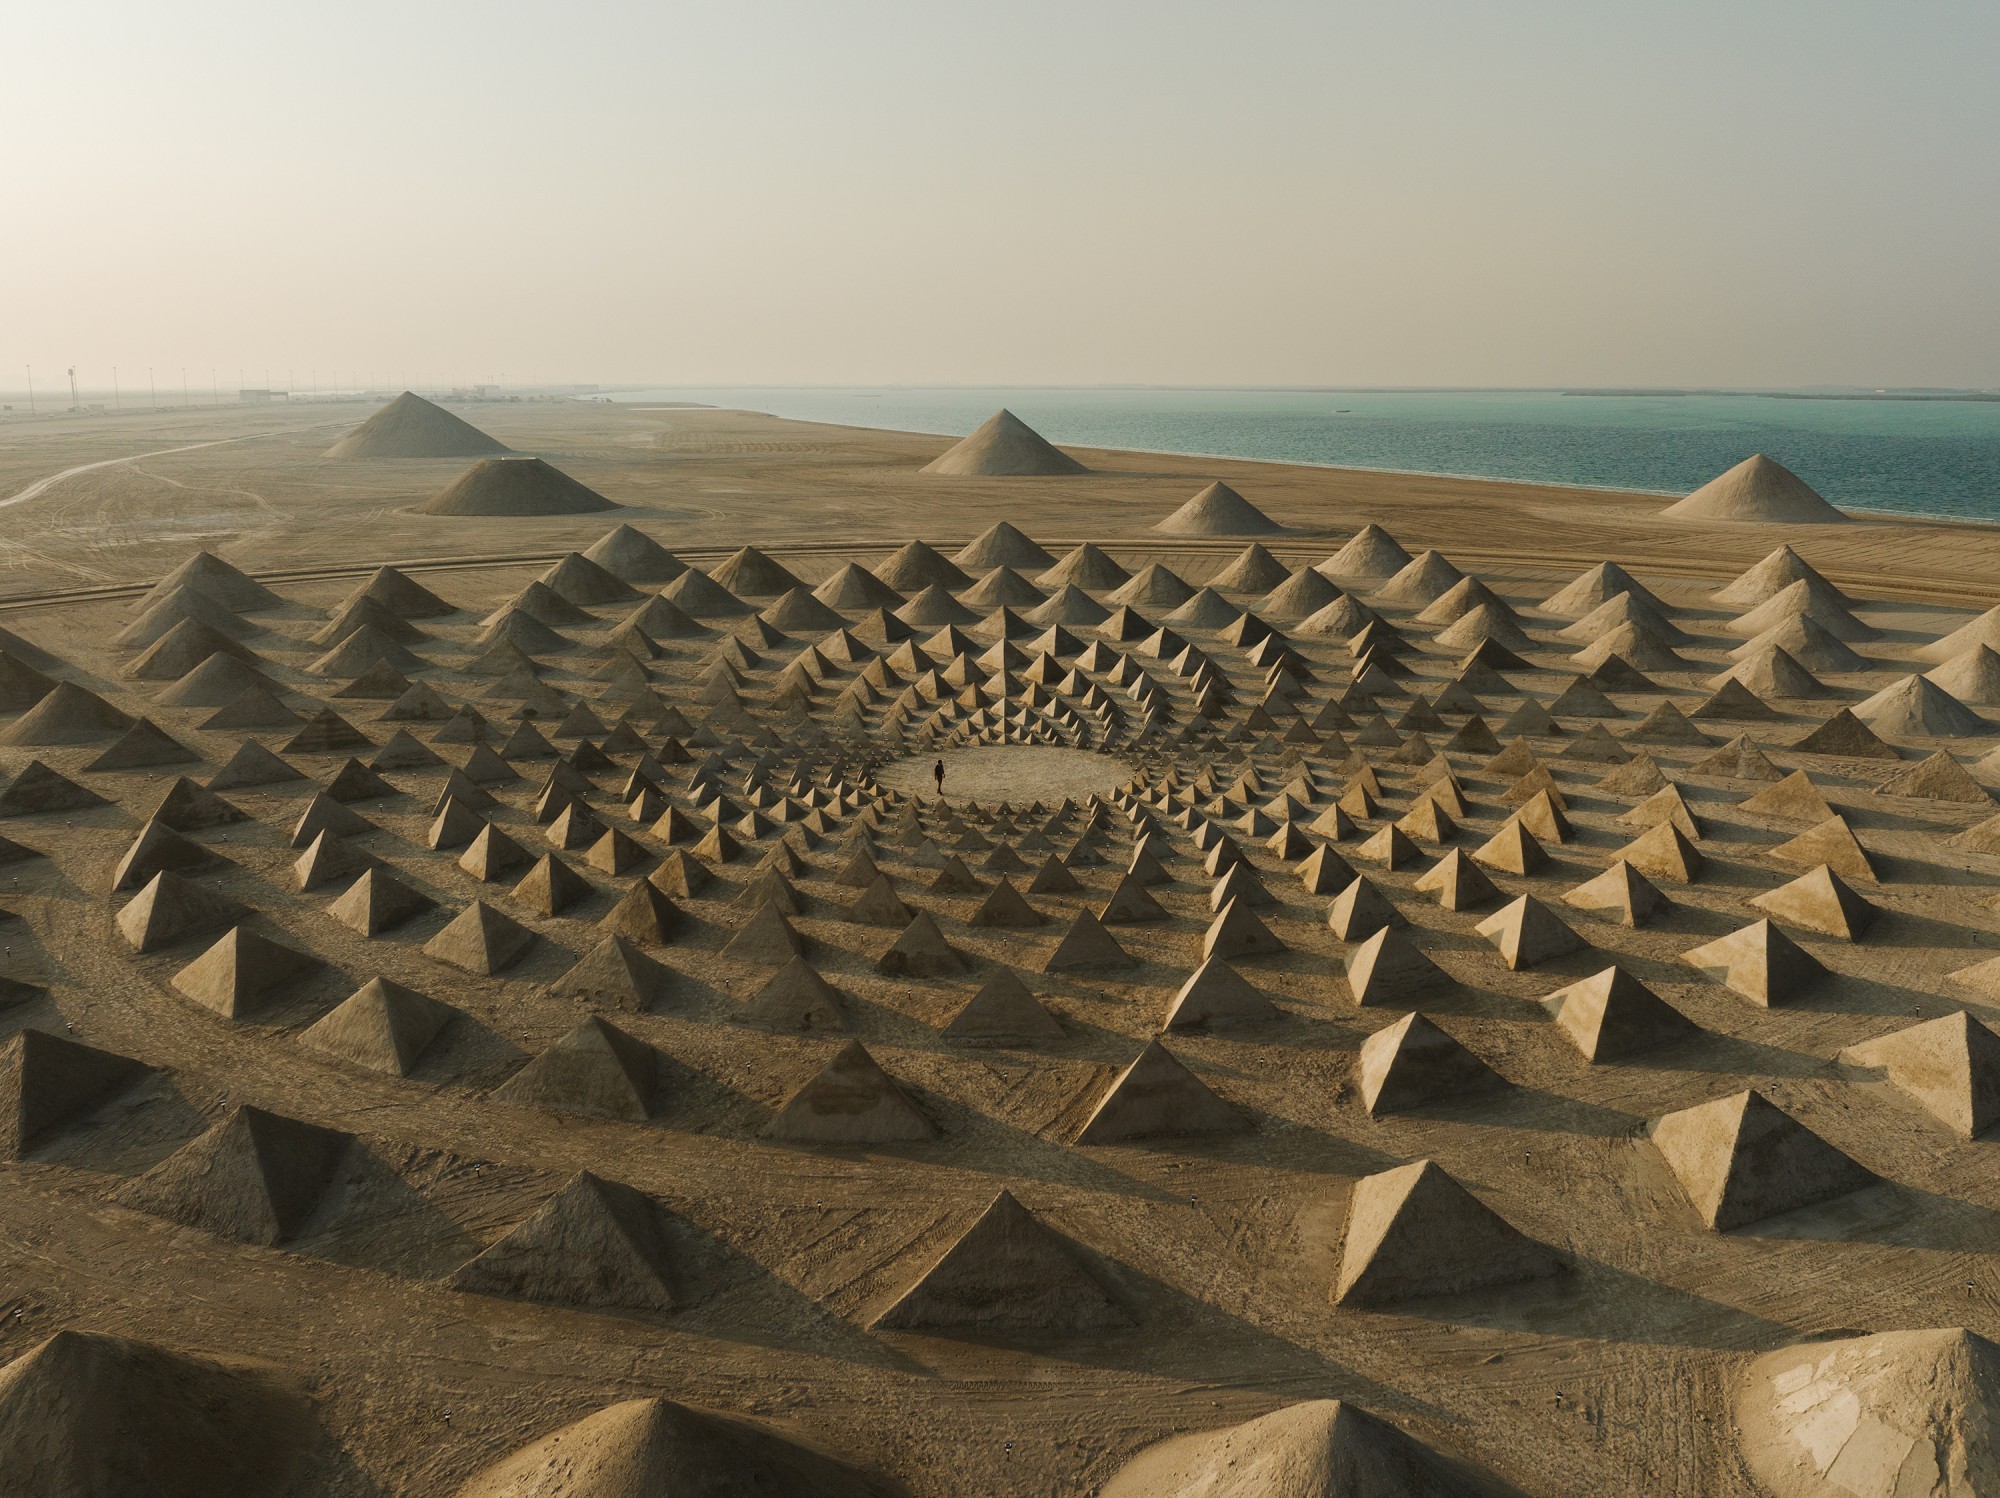 Sandskulptur von Jim Denevan in Abu Dhabi